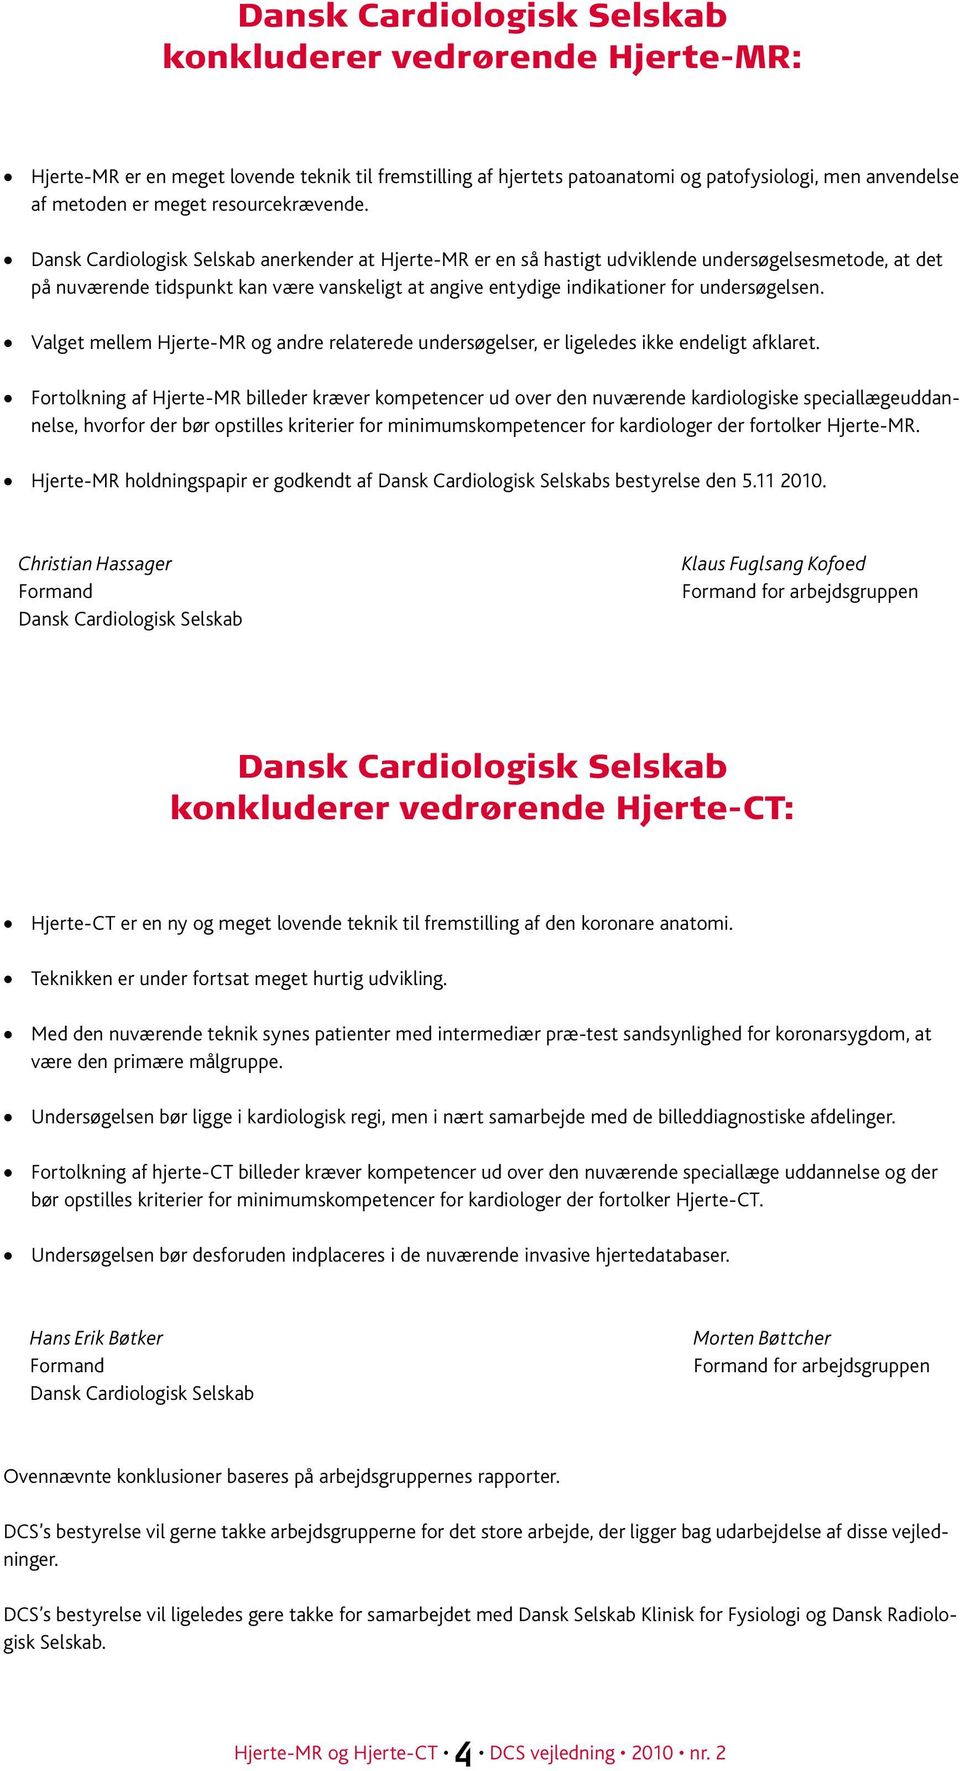 Dansk Cardiologisk Selskab anerkender at Hjerte-MR er en så hastigt udviklende undersøgelsesmetode, at det på nuværende tidspunkt kan være vanskeligt at angive entydige indikationer for undersøgelsen.